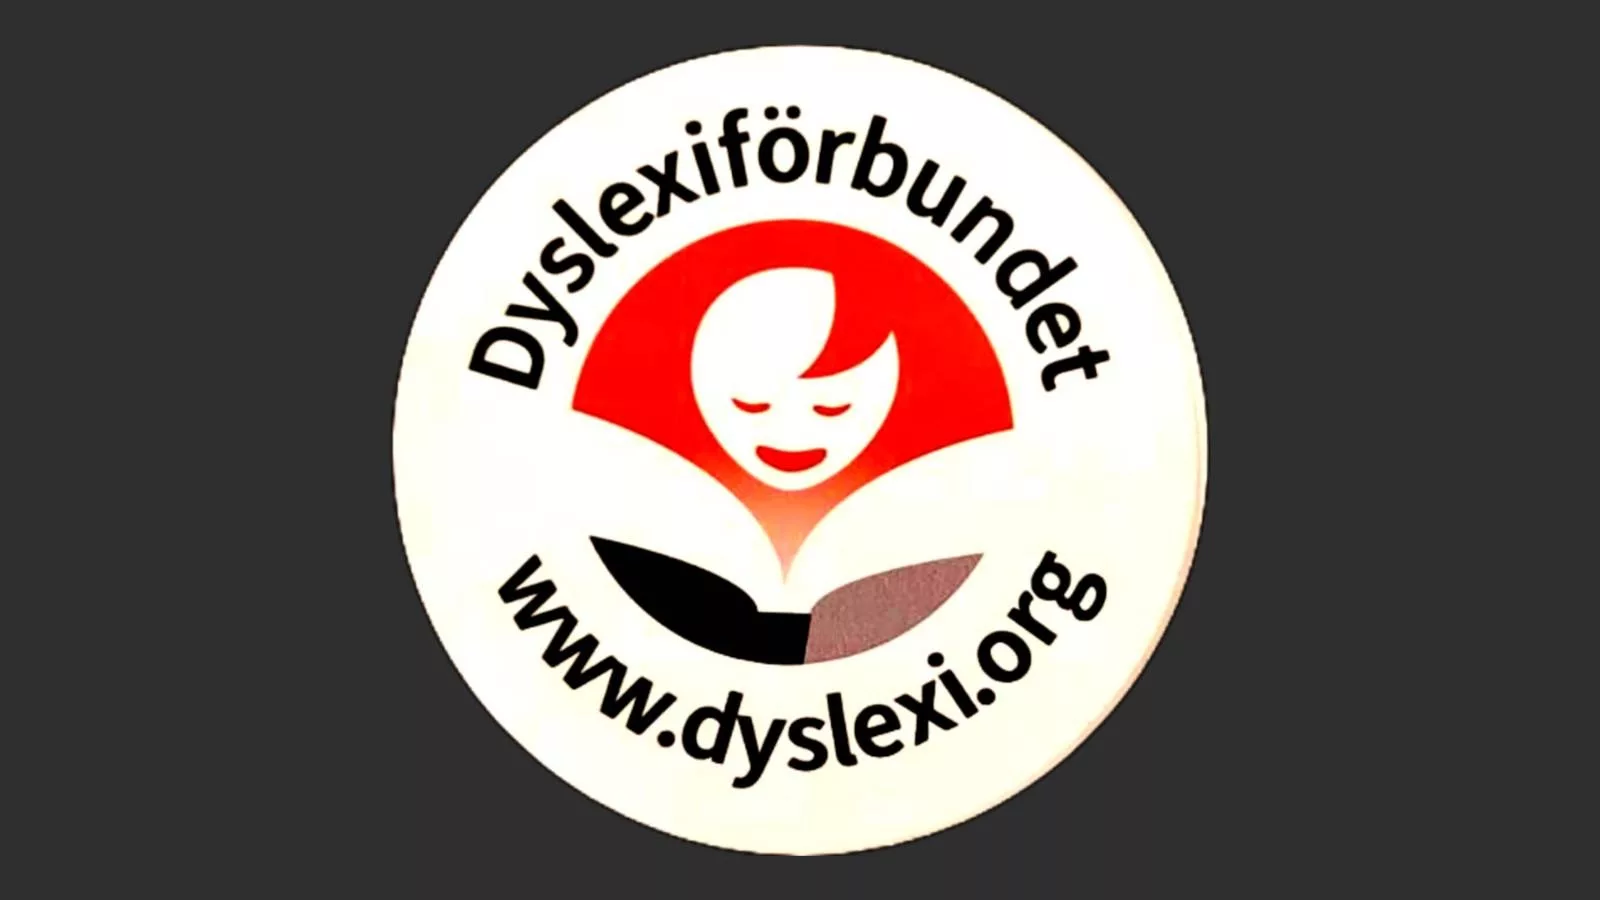 Runt klistermärke. I mitten Dyslexiförbundets logotyp som är en rund läsande figur i orange. Runt står "Dyslexiförbundet" och "www.dyslexi.org".